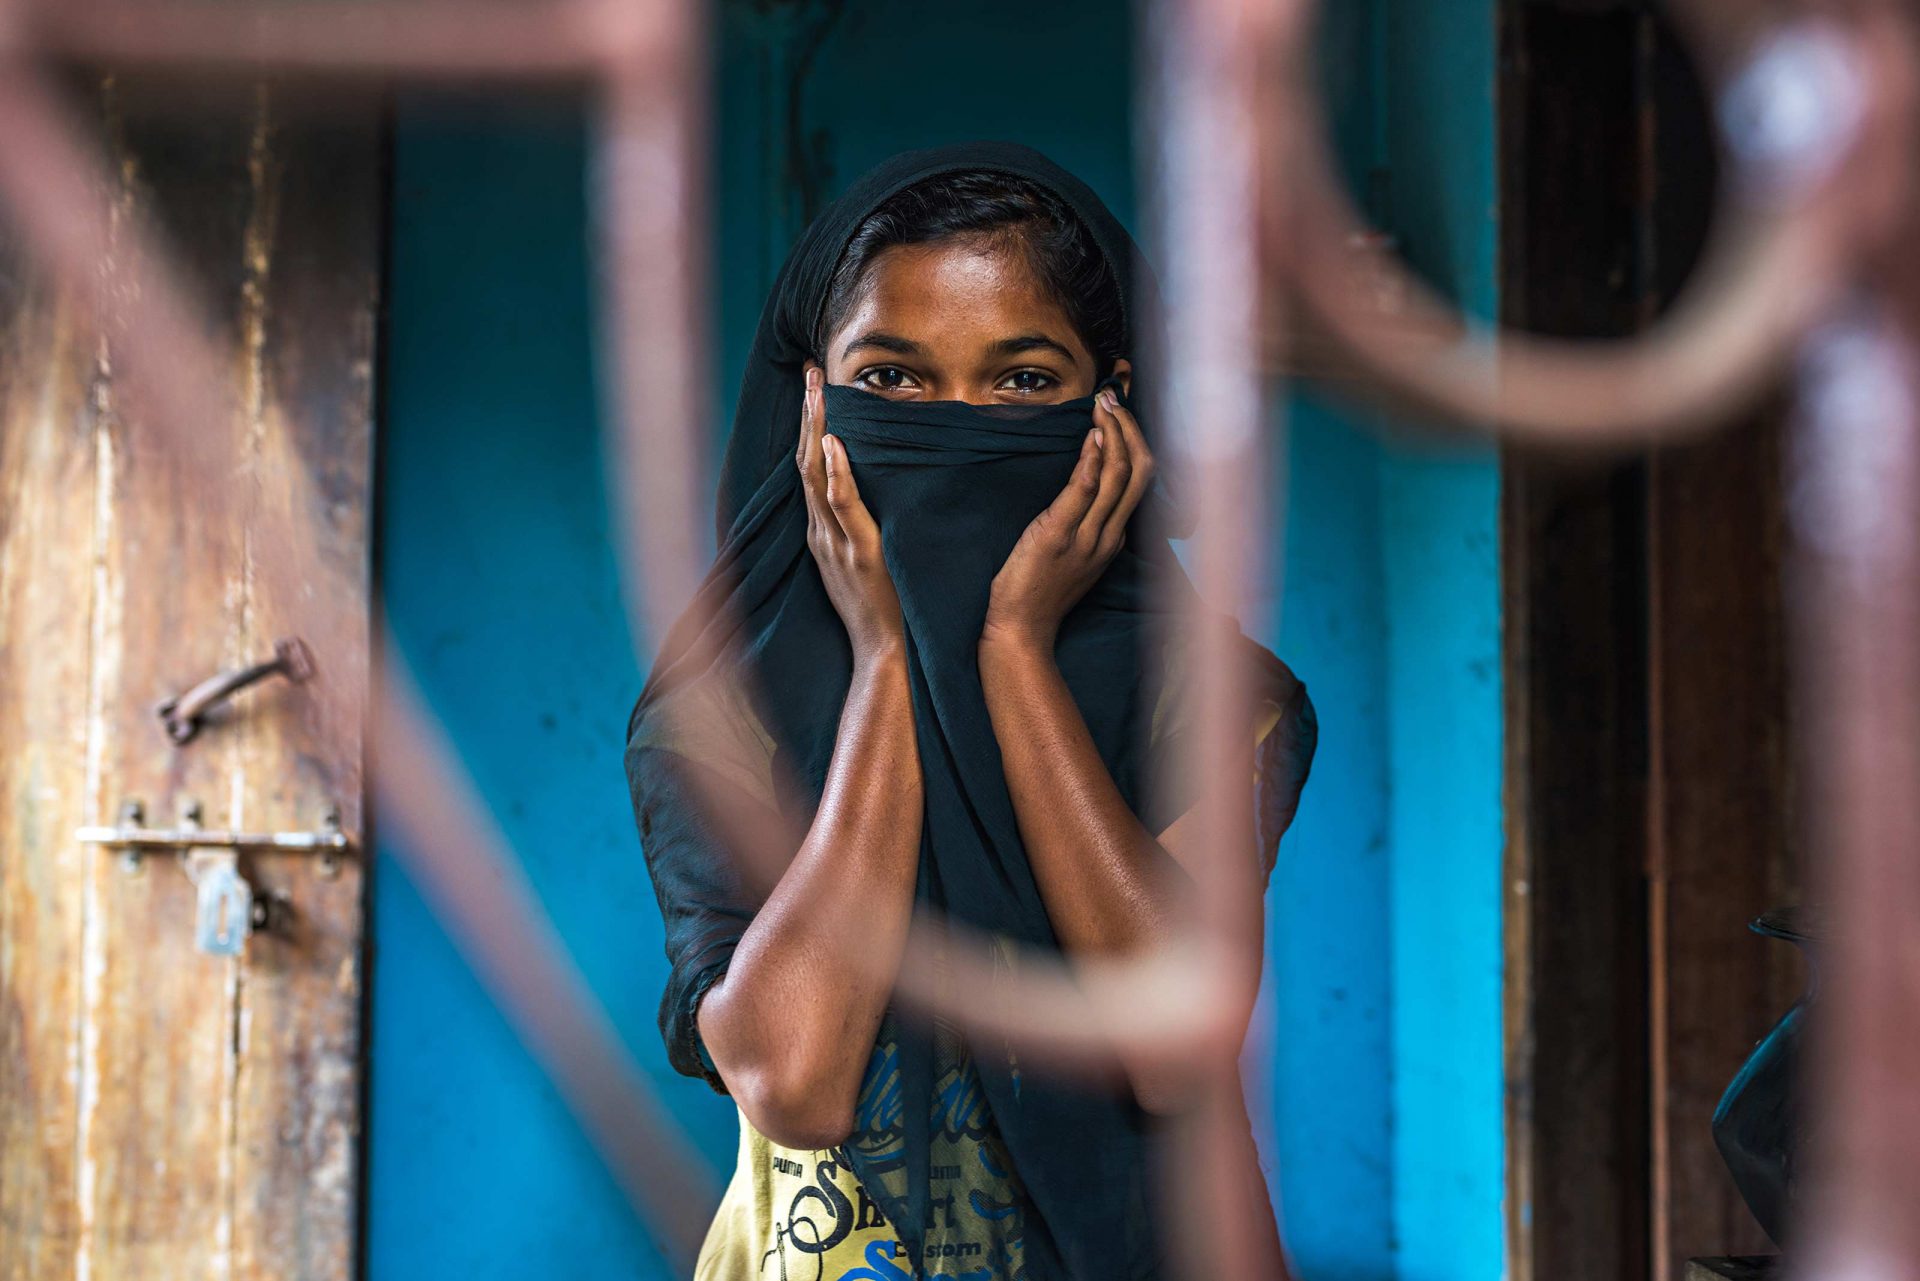 Questa immagine vuole rappresentare una sposa bambina costretta ad un matrimonio precoce in Bangladesh